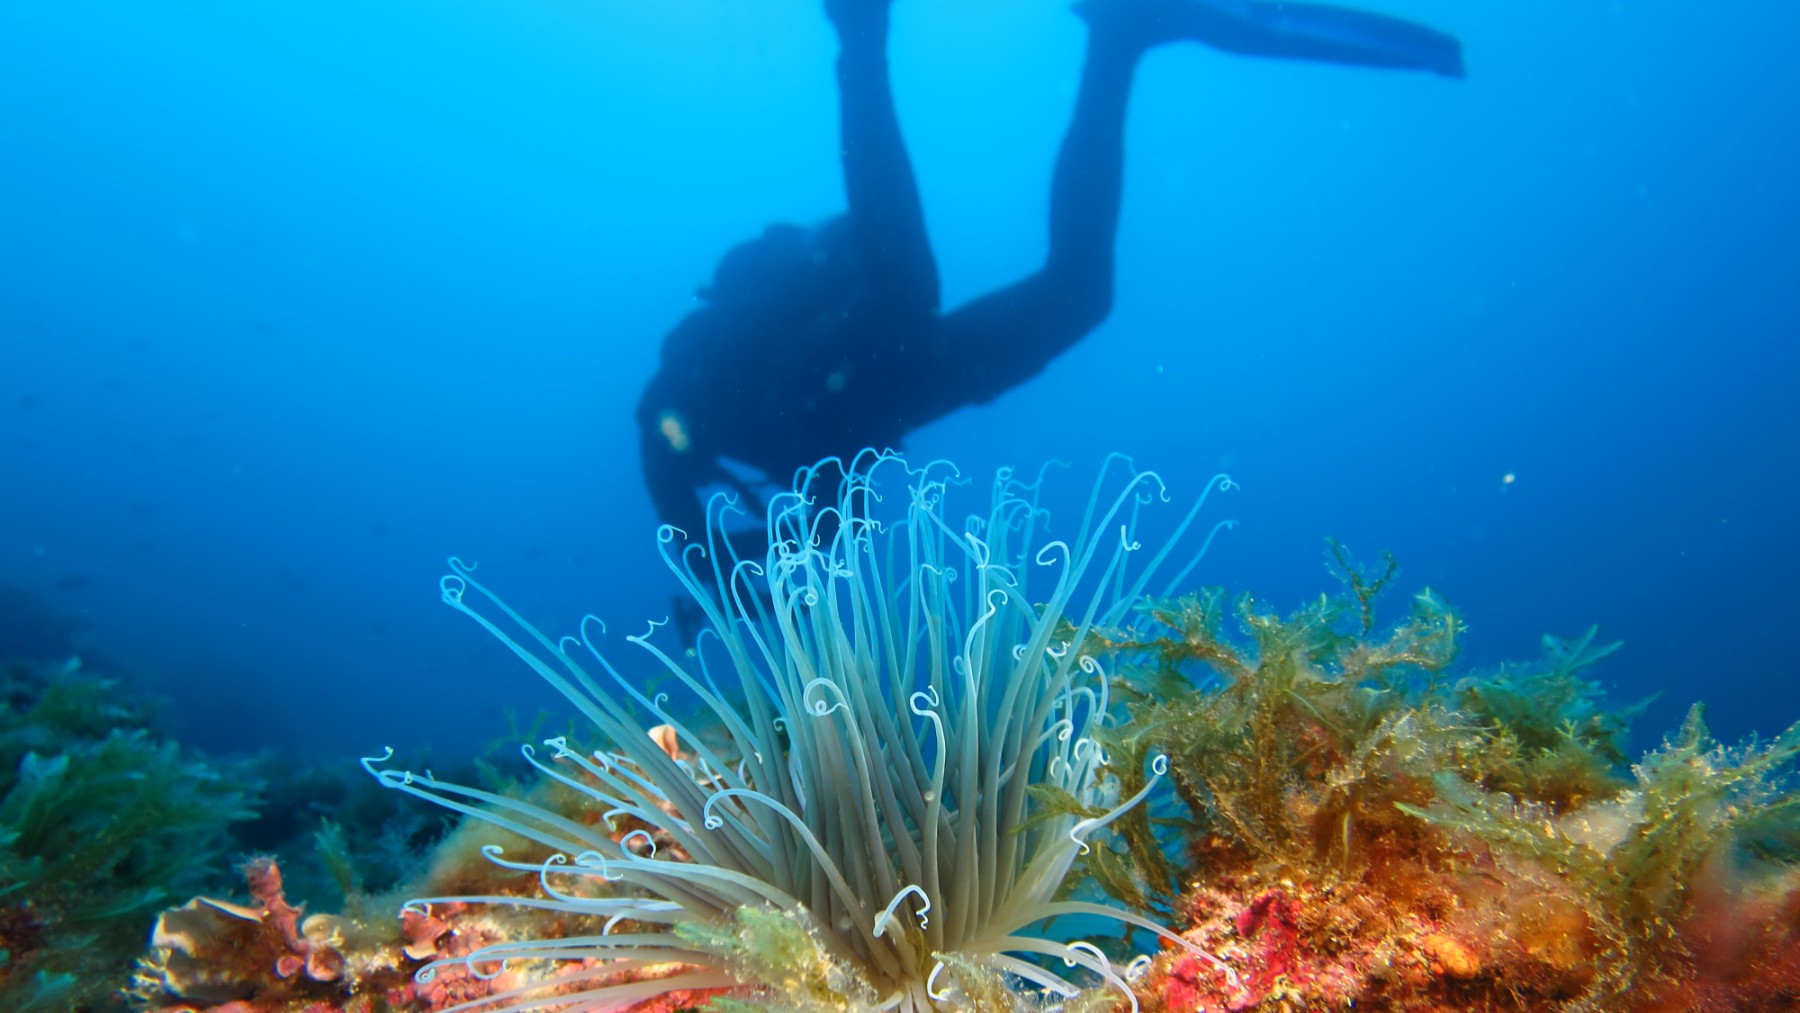 Ecosistemas como los corales y las praderas de posidonia son imprescindibles para preservar los ecosistemas marinos